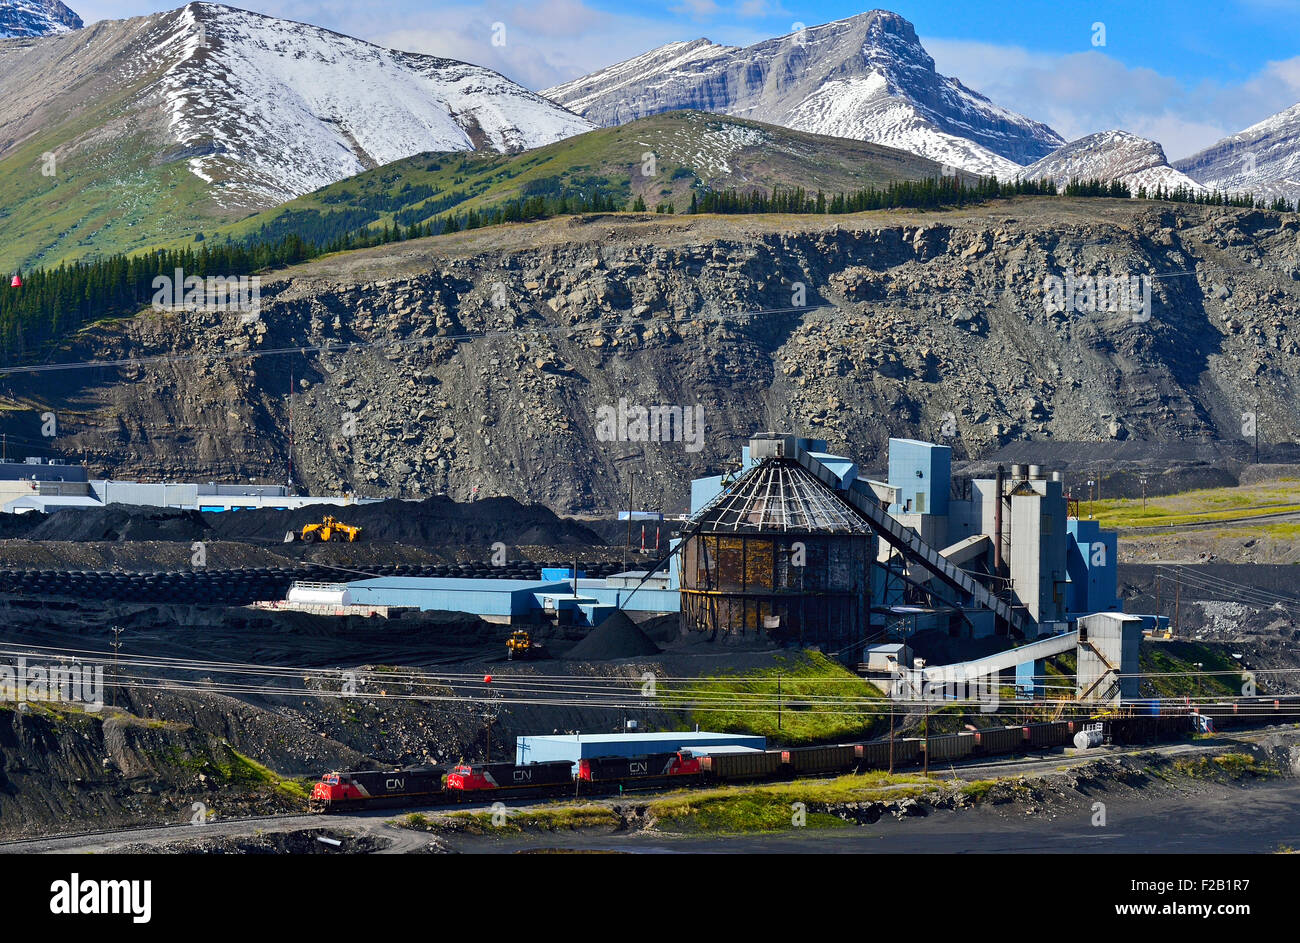 Une image paysage de l'usine de transformation du charbon de teck dans les contreforts des montagnes Rocheuses, près de l'Alberta, de Cadomin Banque D'Images